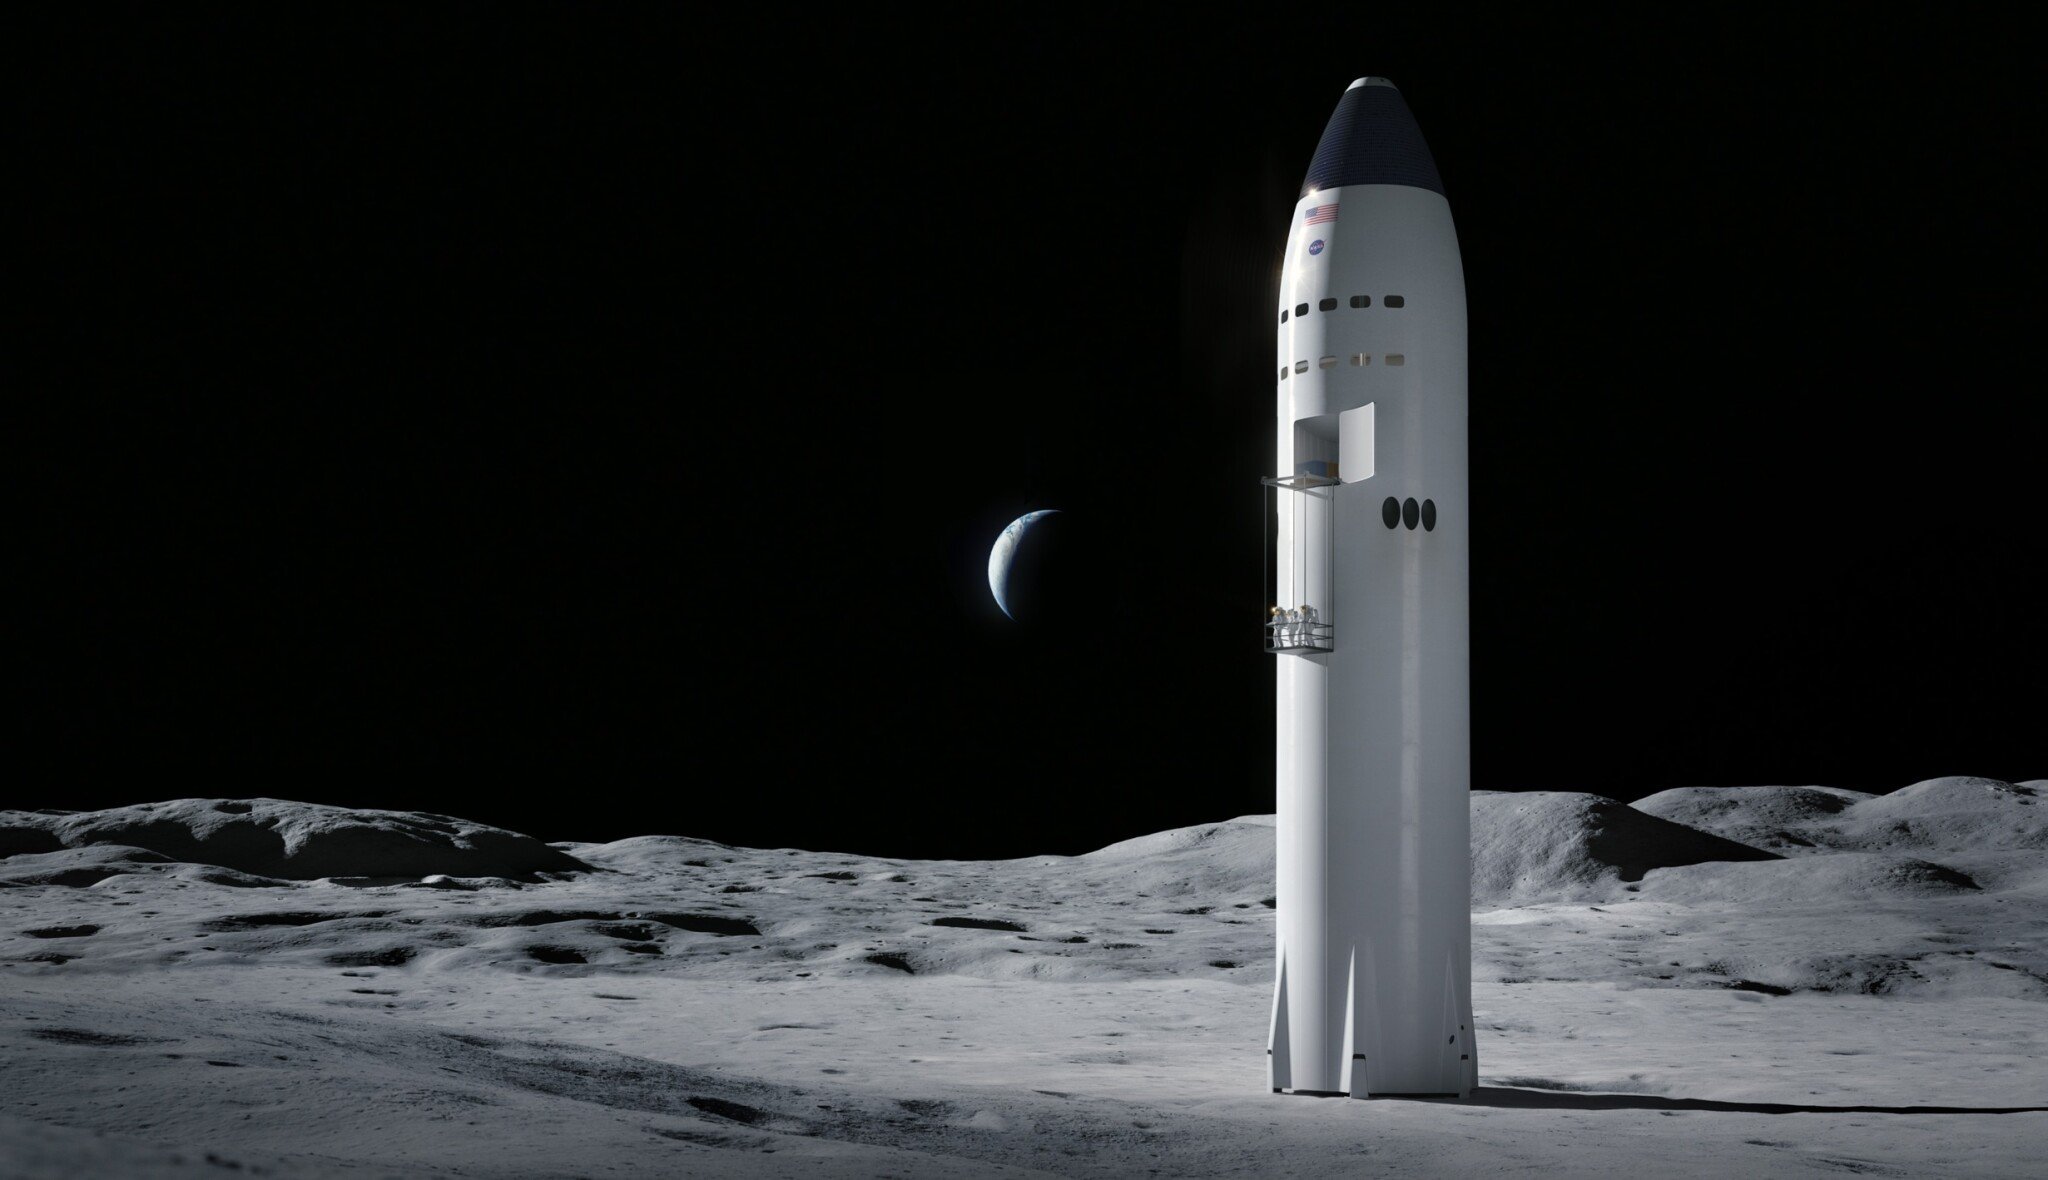 Návrat lidí na Měsíc nabírá zpoždění. Program Artemis patrně nesplní cílový termín v roce 2024